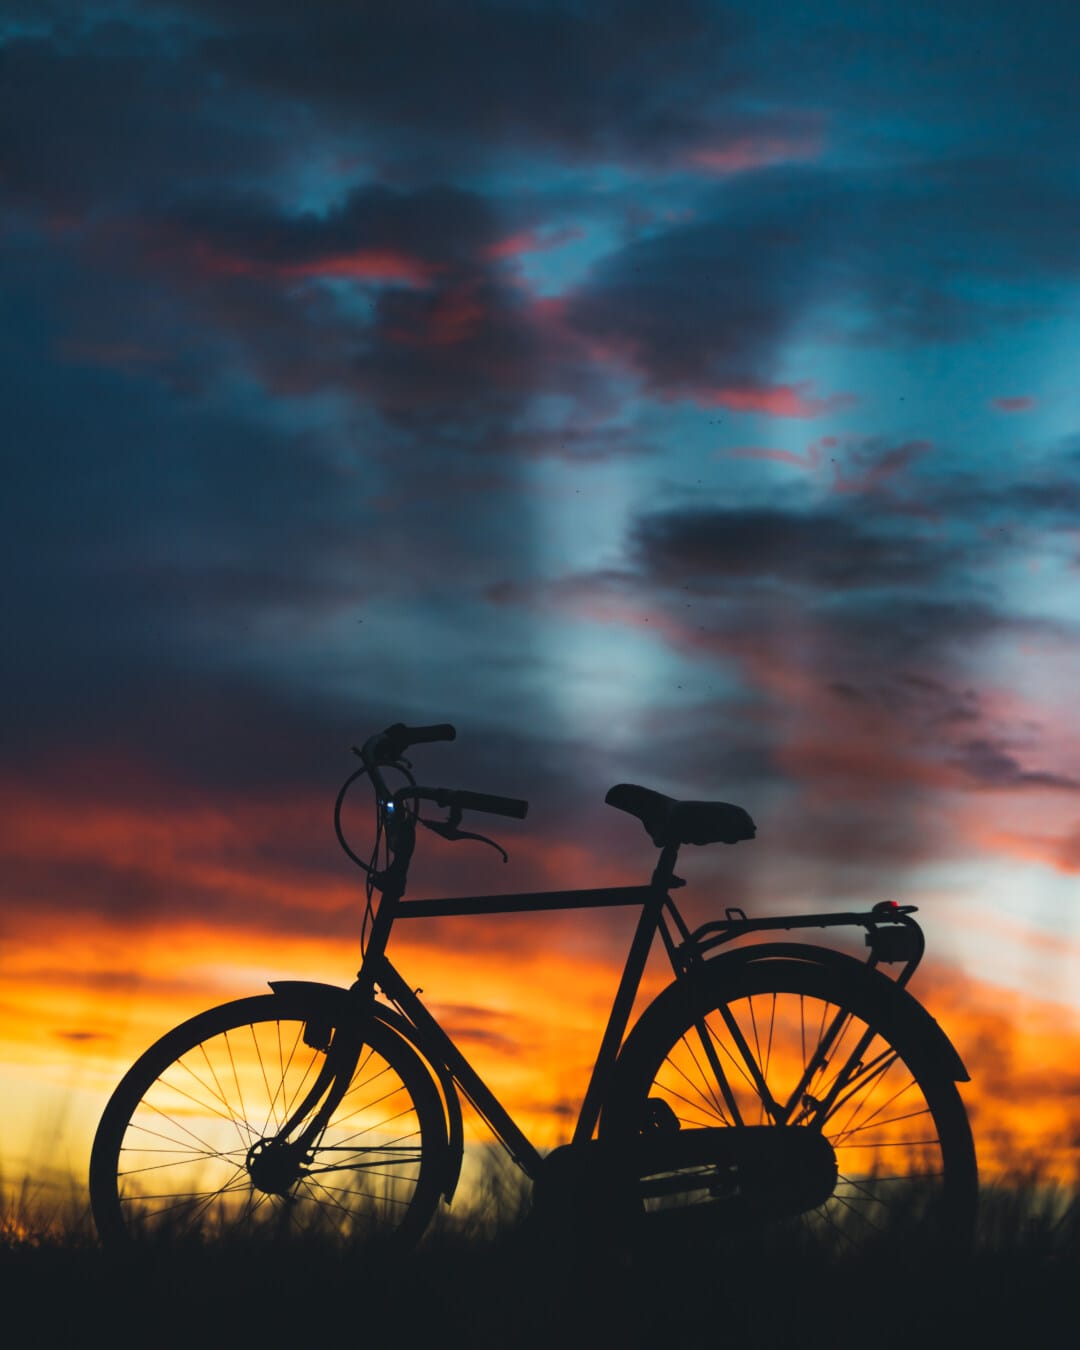 siluet, bisiklet, arkadan aydınlatmalı, görkemli, atmosfer, alacakaranlık, akşam, cennet gibi, günbatımı, akşam karanlığı